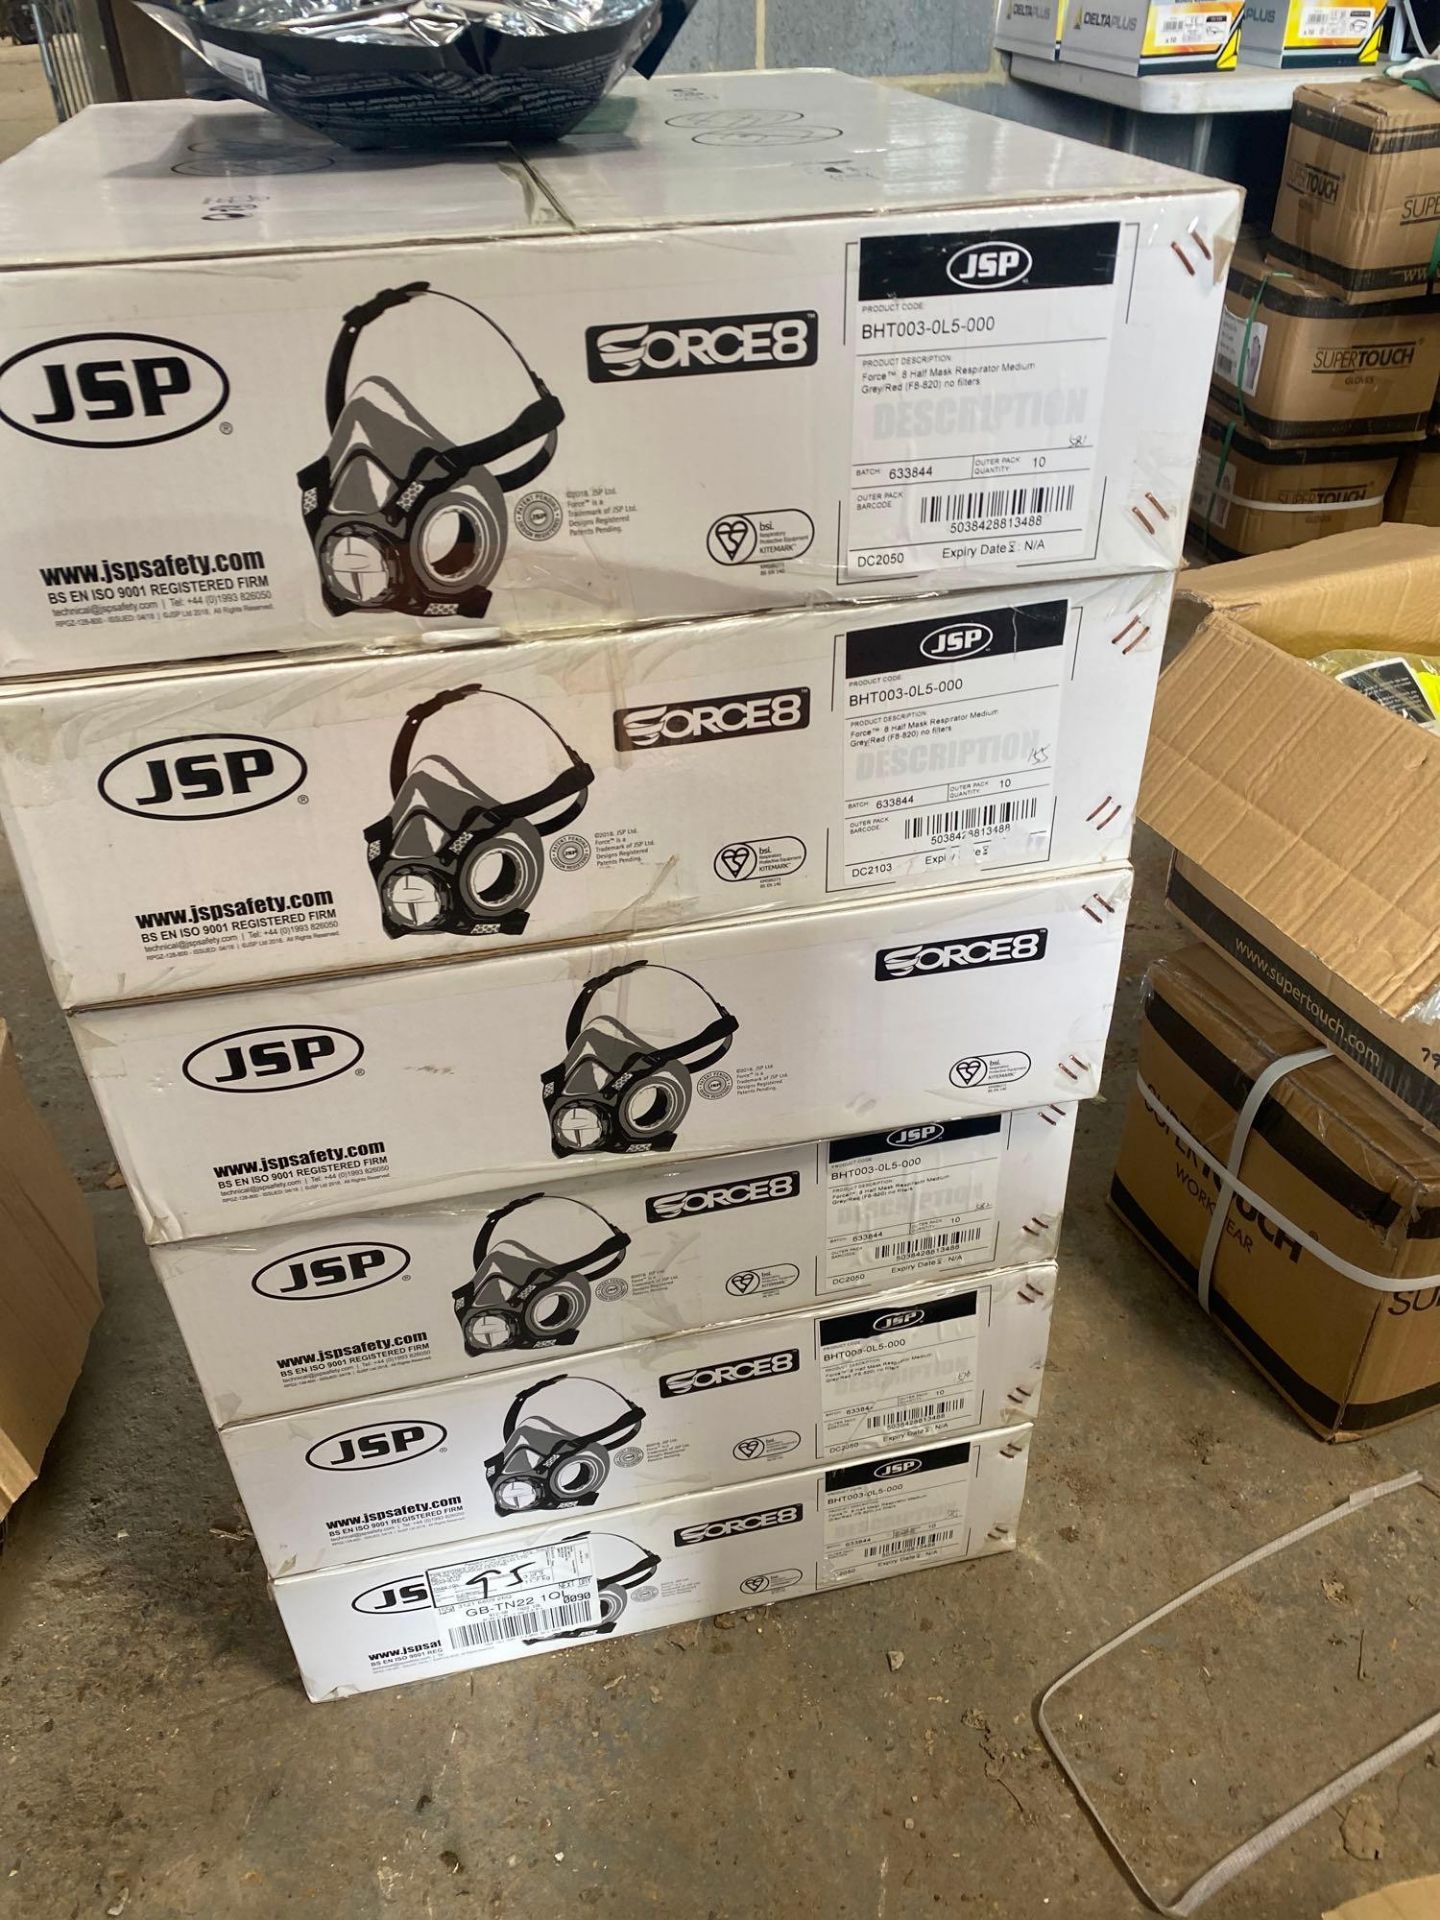 58 JSP Force 8 half mask respirators